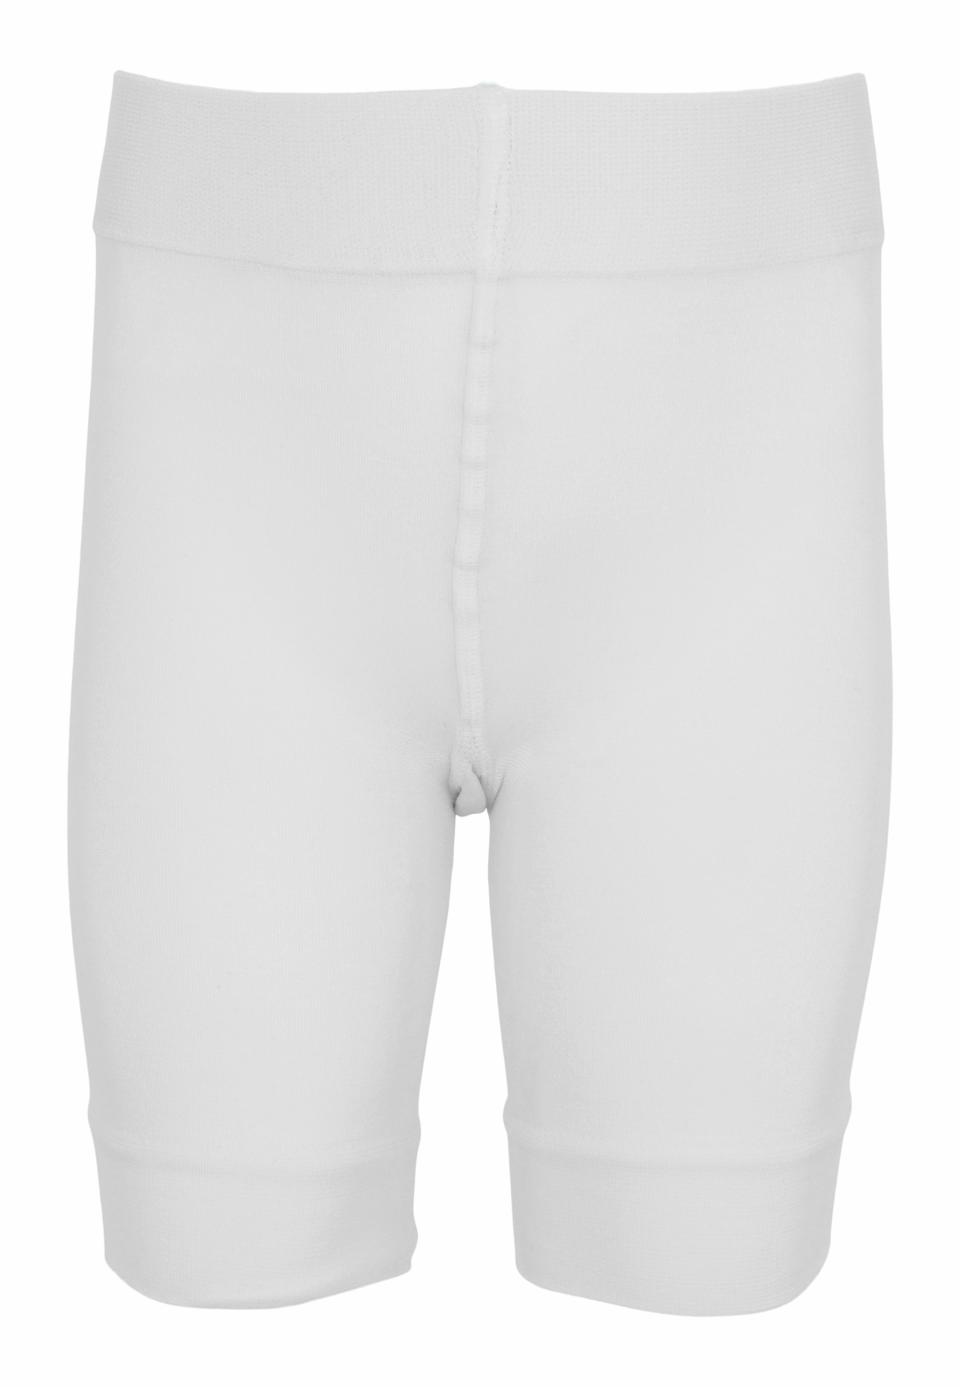 Udlevering Store sæt Microfiber shorts - White - 100